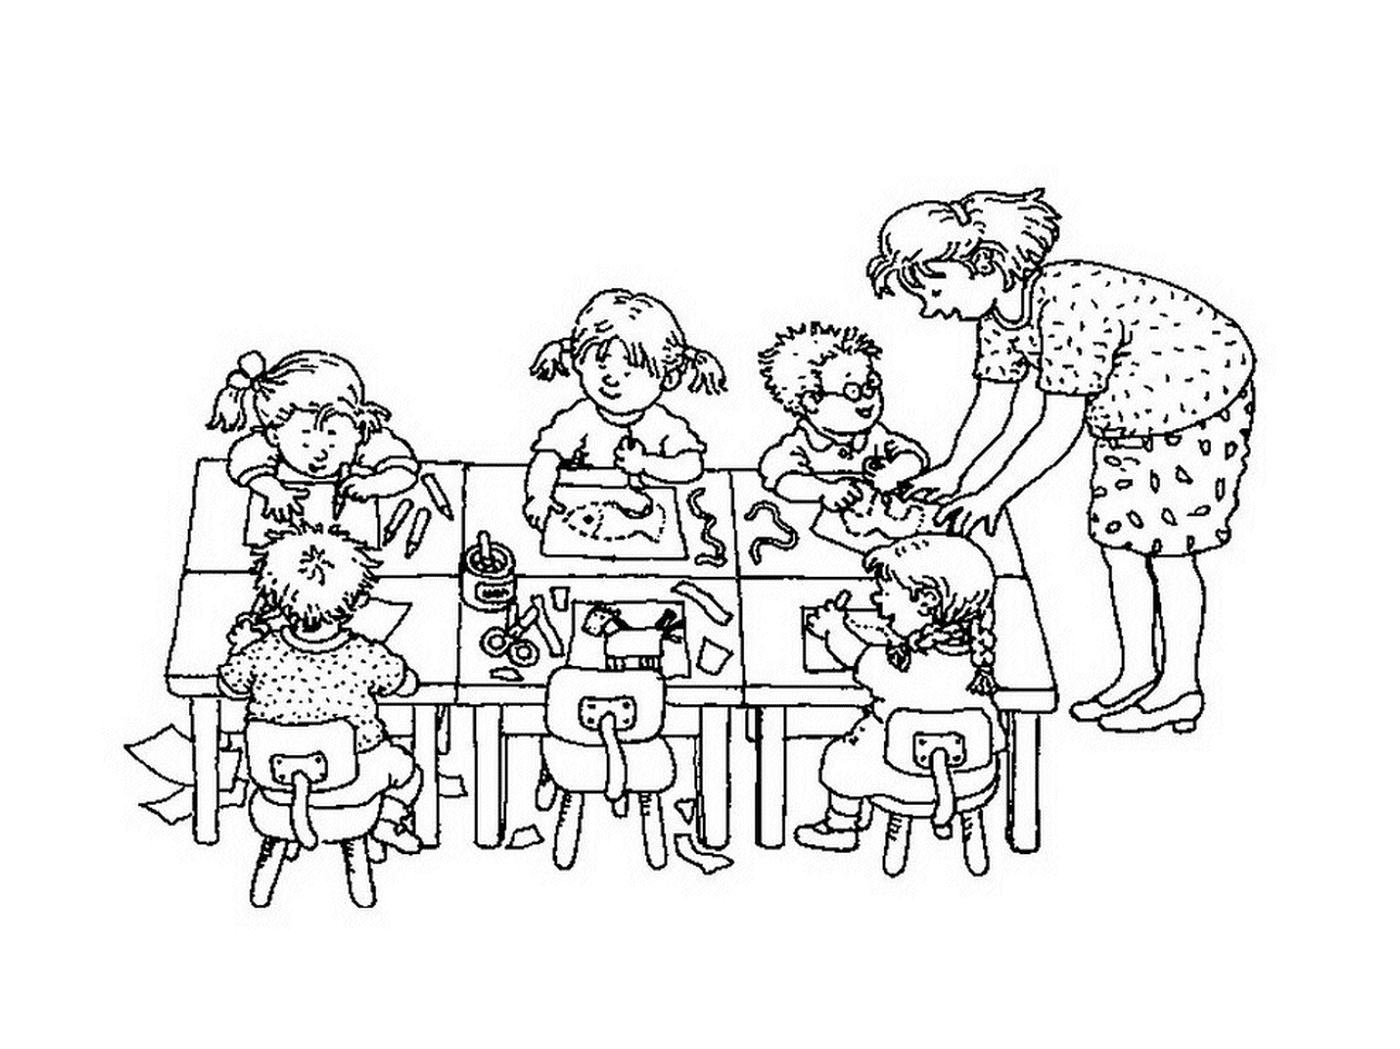  Um professor e seus alunos sentados em uma mesa 